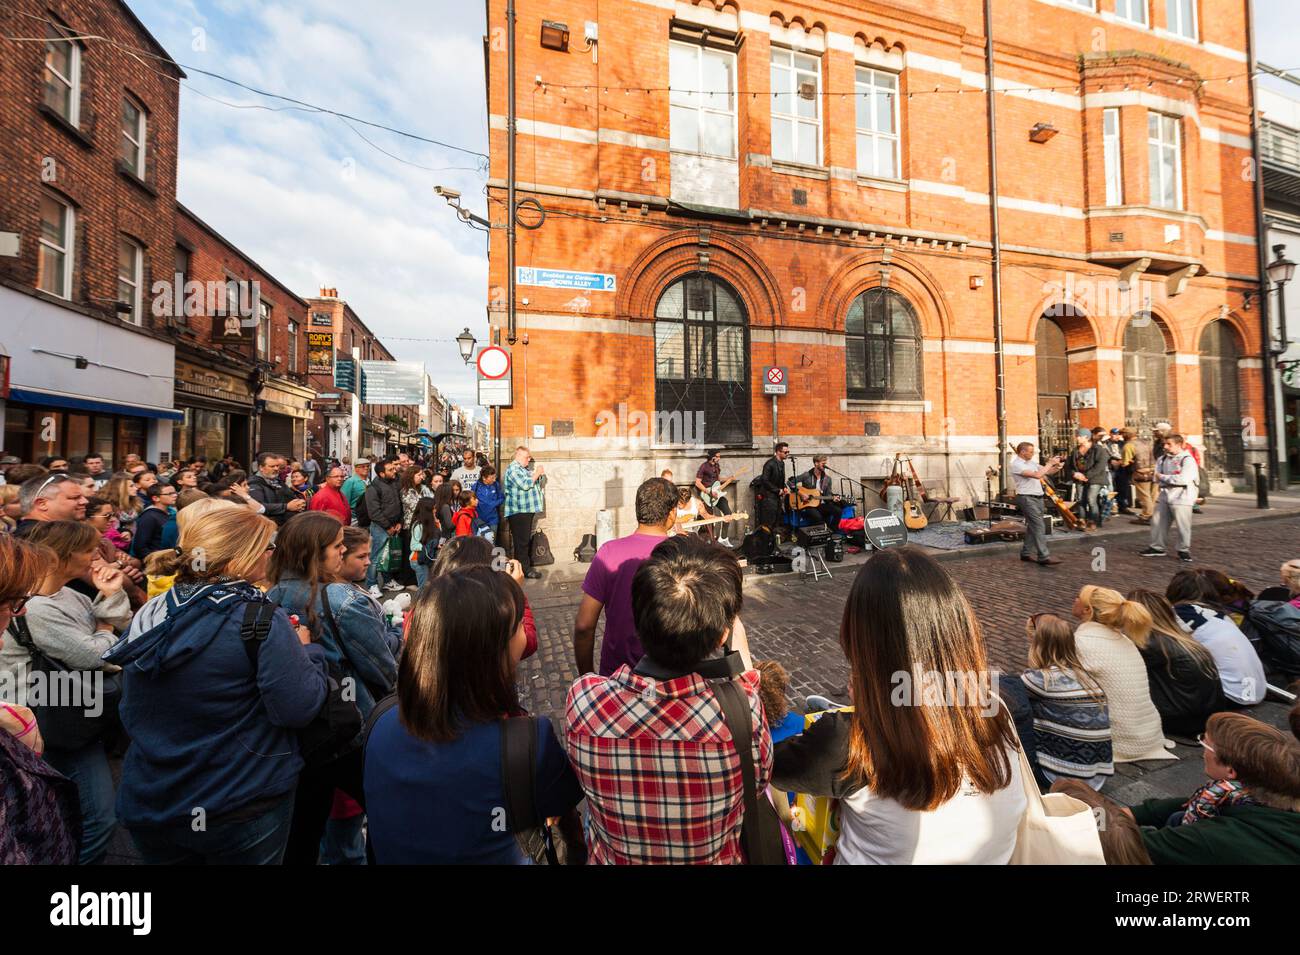 Dublino, Irlanda - 08 16, 2015 mucchio di persone che circondano e girano una band irlandese di strada che improvvisano uno spettacolo musicale Dublin Temple Bar Foto Stock